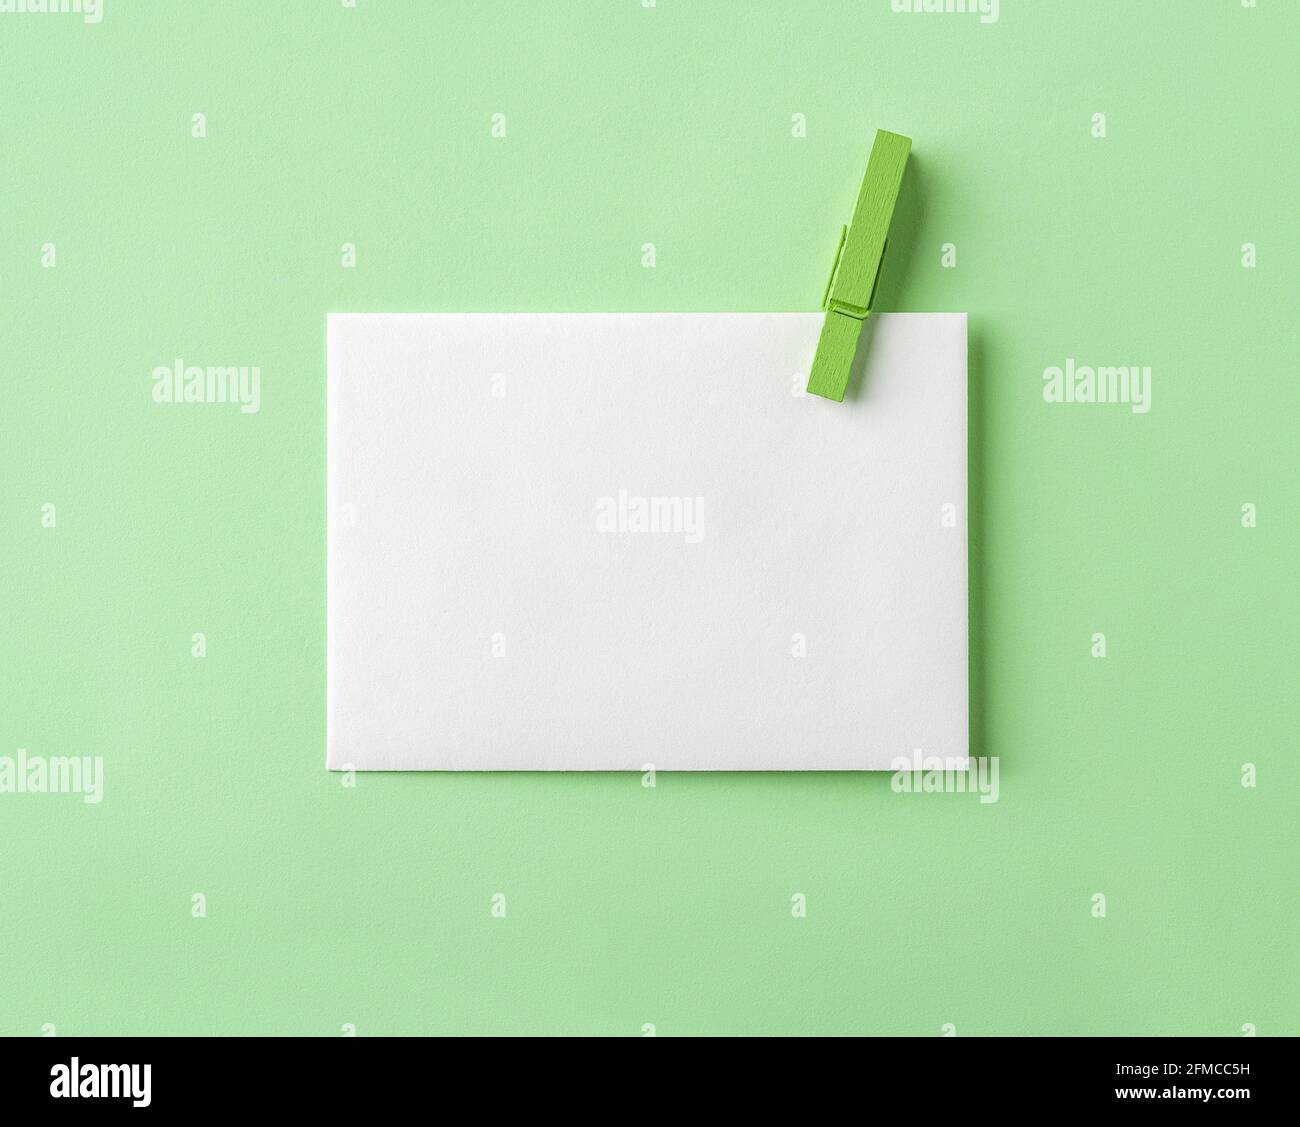 Carta bianca bianca con spilla di legno verde su sfondo di carta verde pastello. Modello dal design minimalista per un messaggio e un biglietto d'auguri ecologici Foto Stock